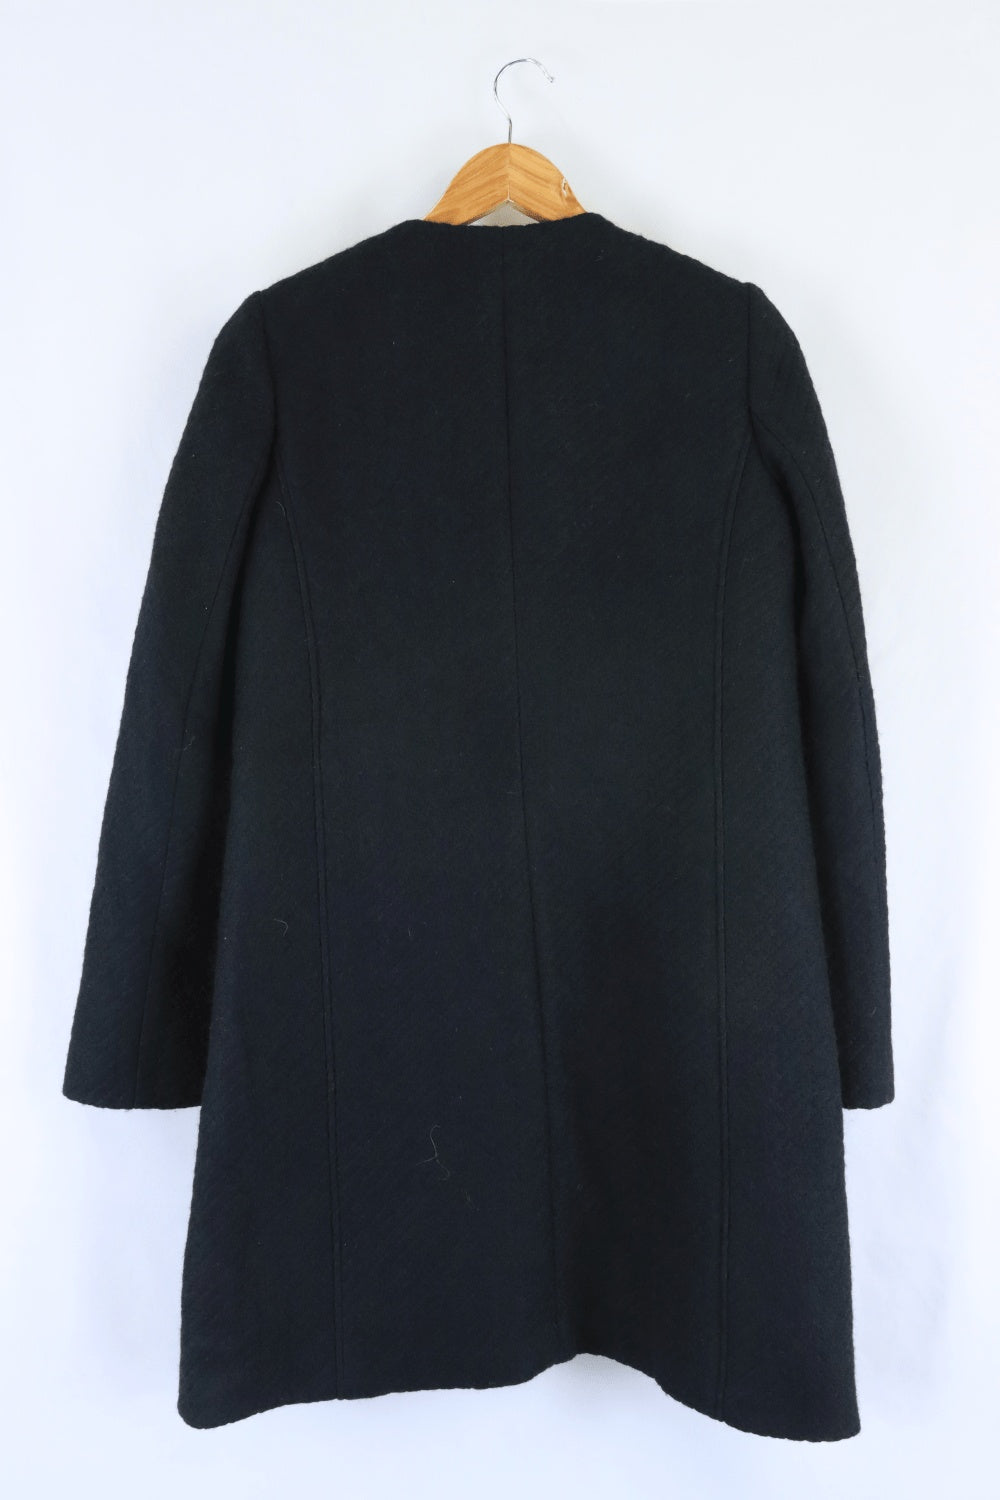 Emporio Armani Black Jacket 10